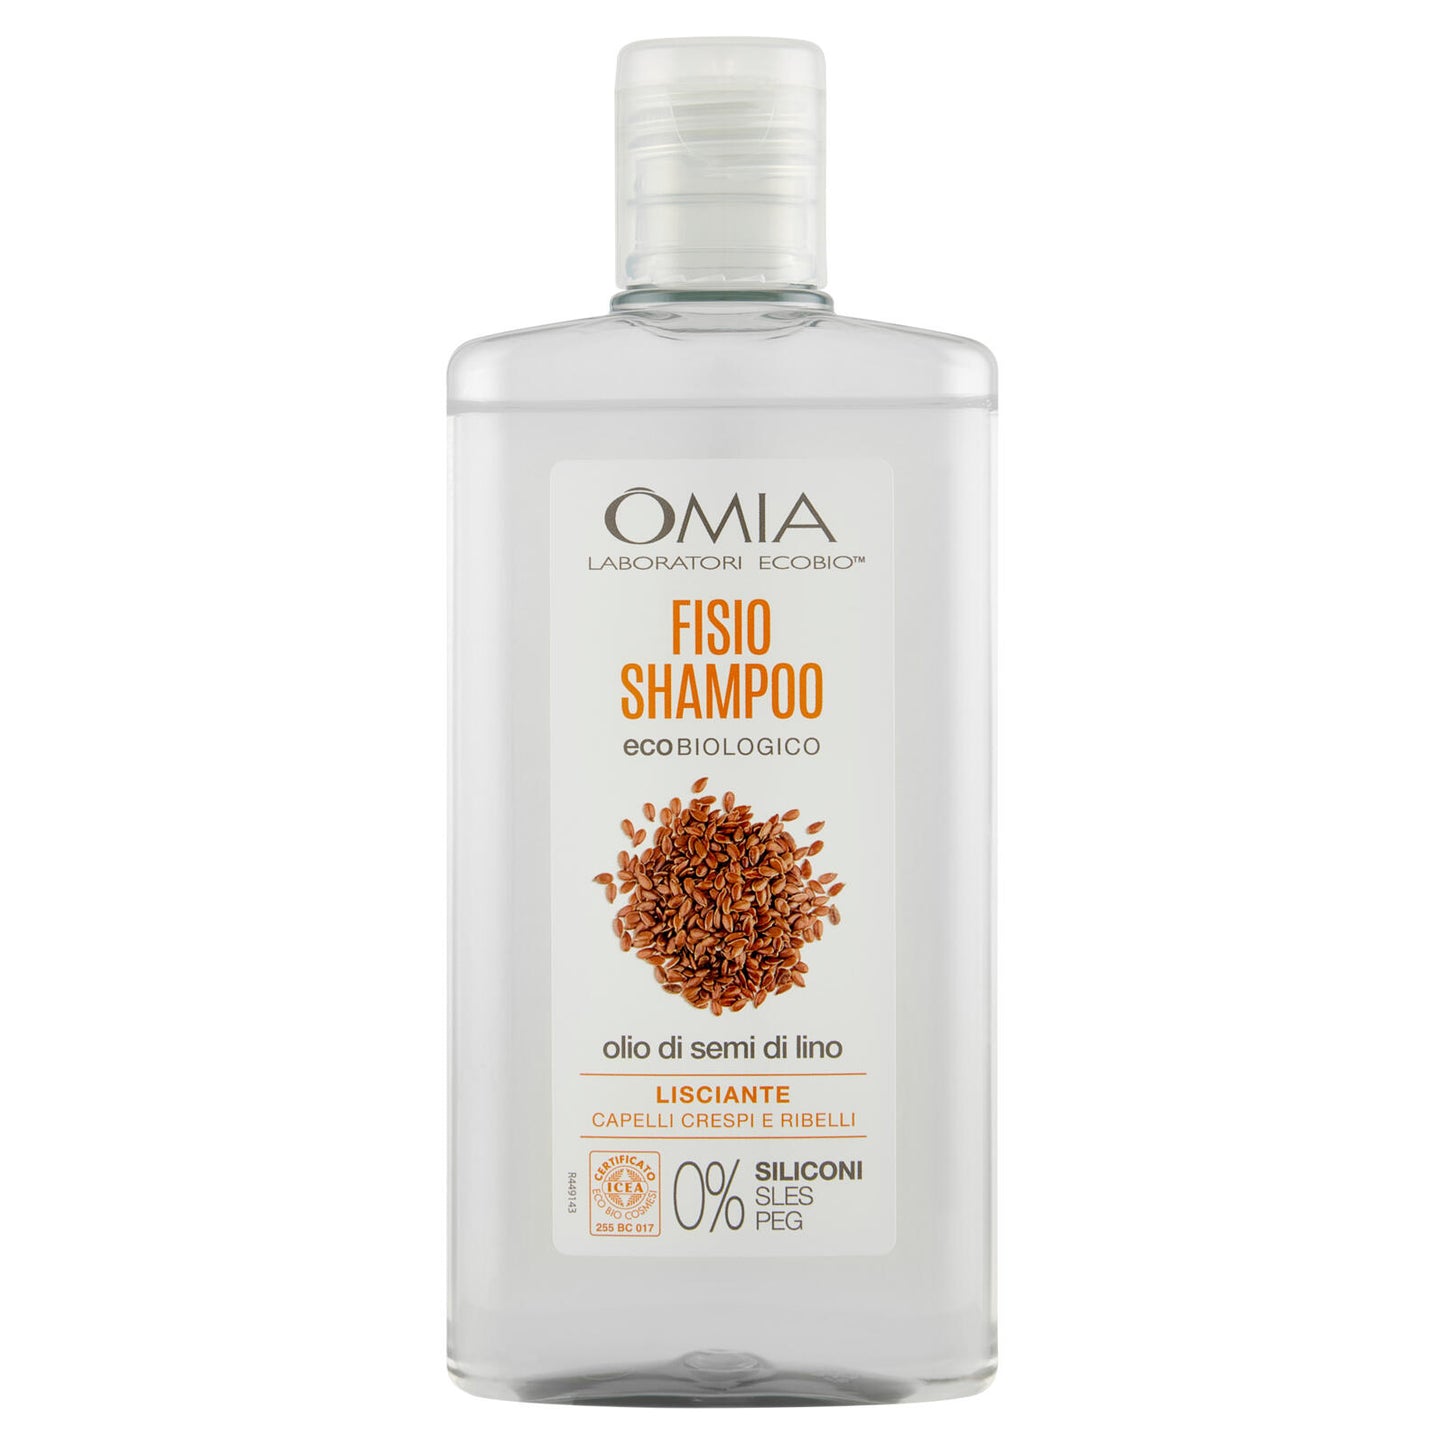 Omia Laboratori Ecobio Fisio Shampoo ecobiologico olio di semi di lino Lisciante 200 ml